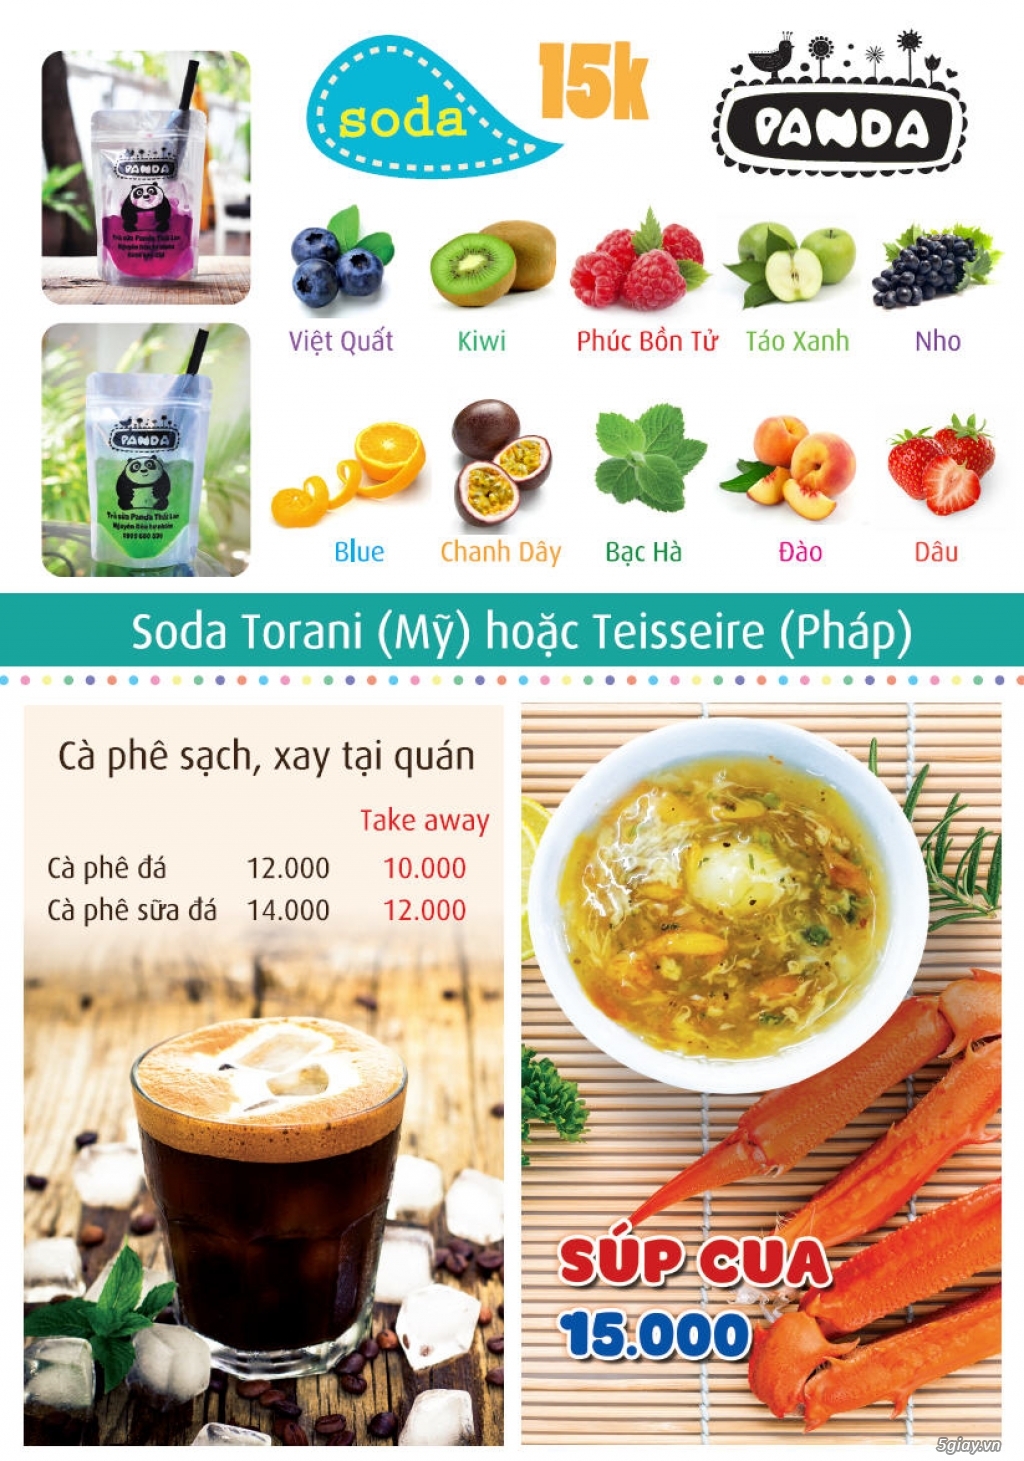 Trà sữa Thái Lan Panda thơm ngon tự nhiên, súp cua, khoai tây lắc - 3